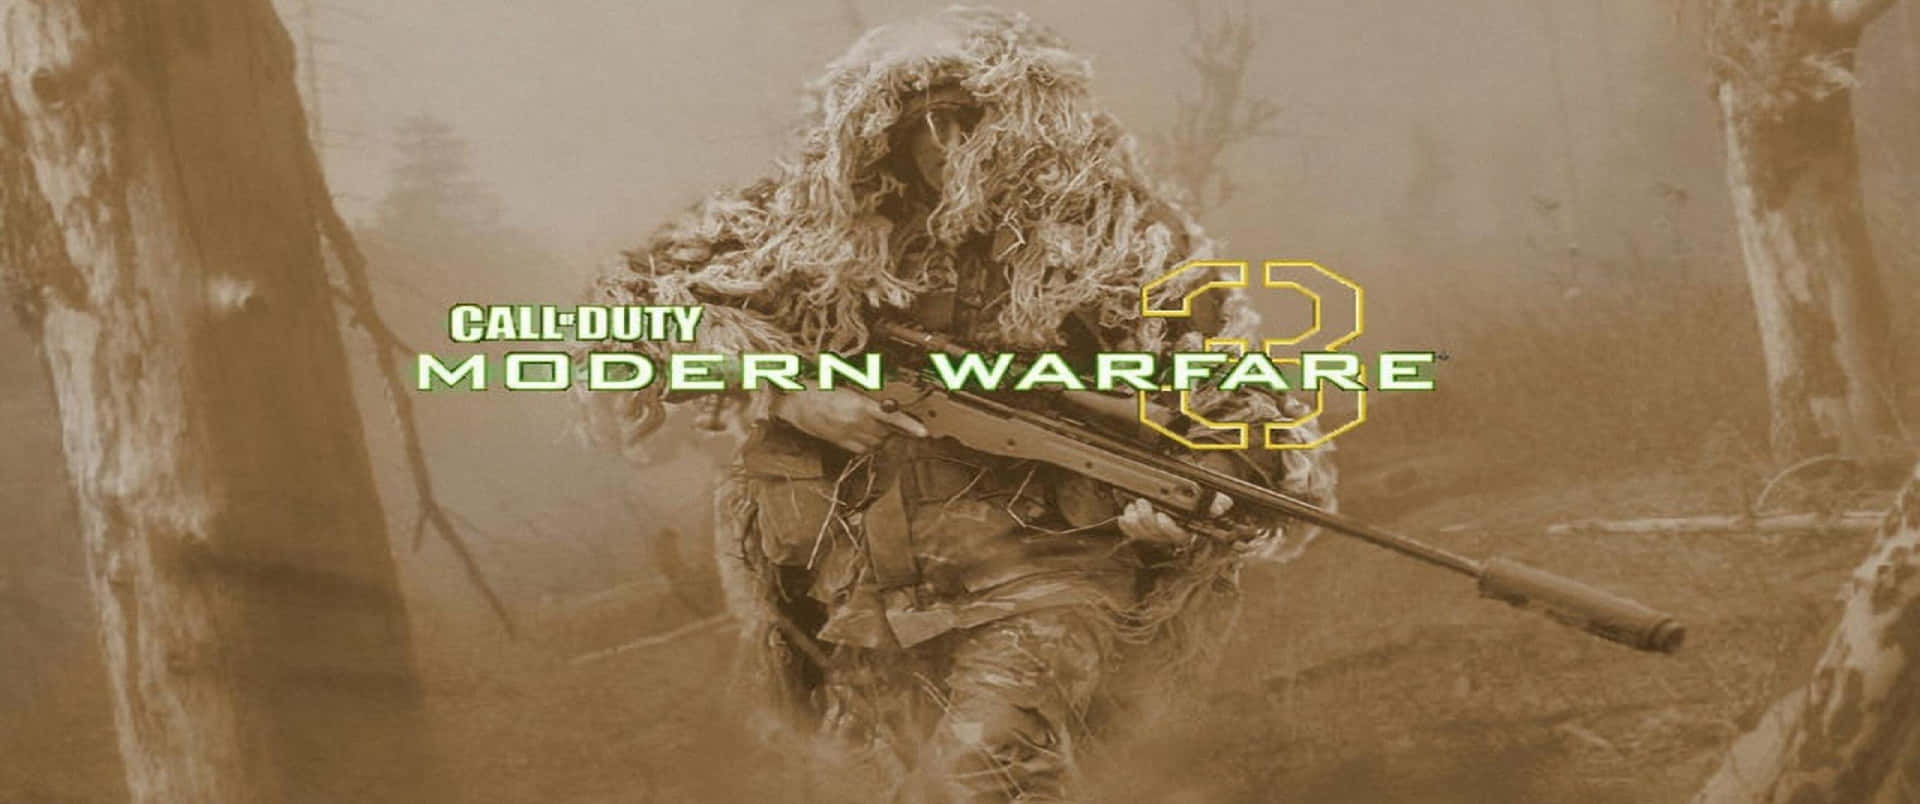 Soldadocon Red De Camuflaje Fondo De Pantalla Call Of Duty Modern Warfare 3440x1440p